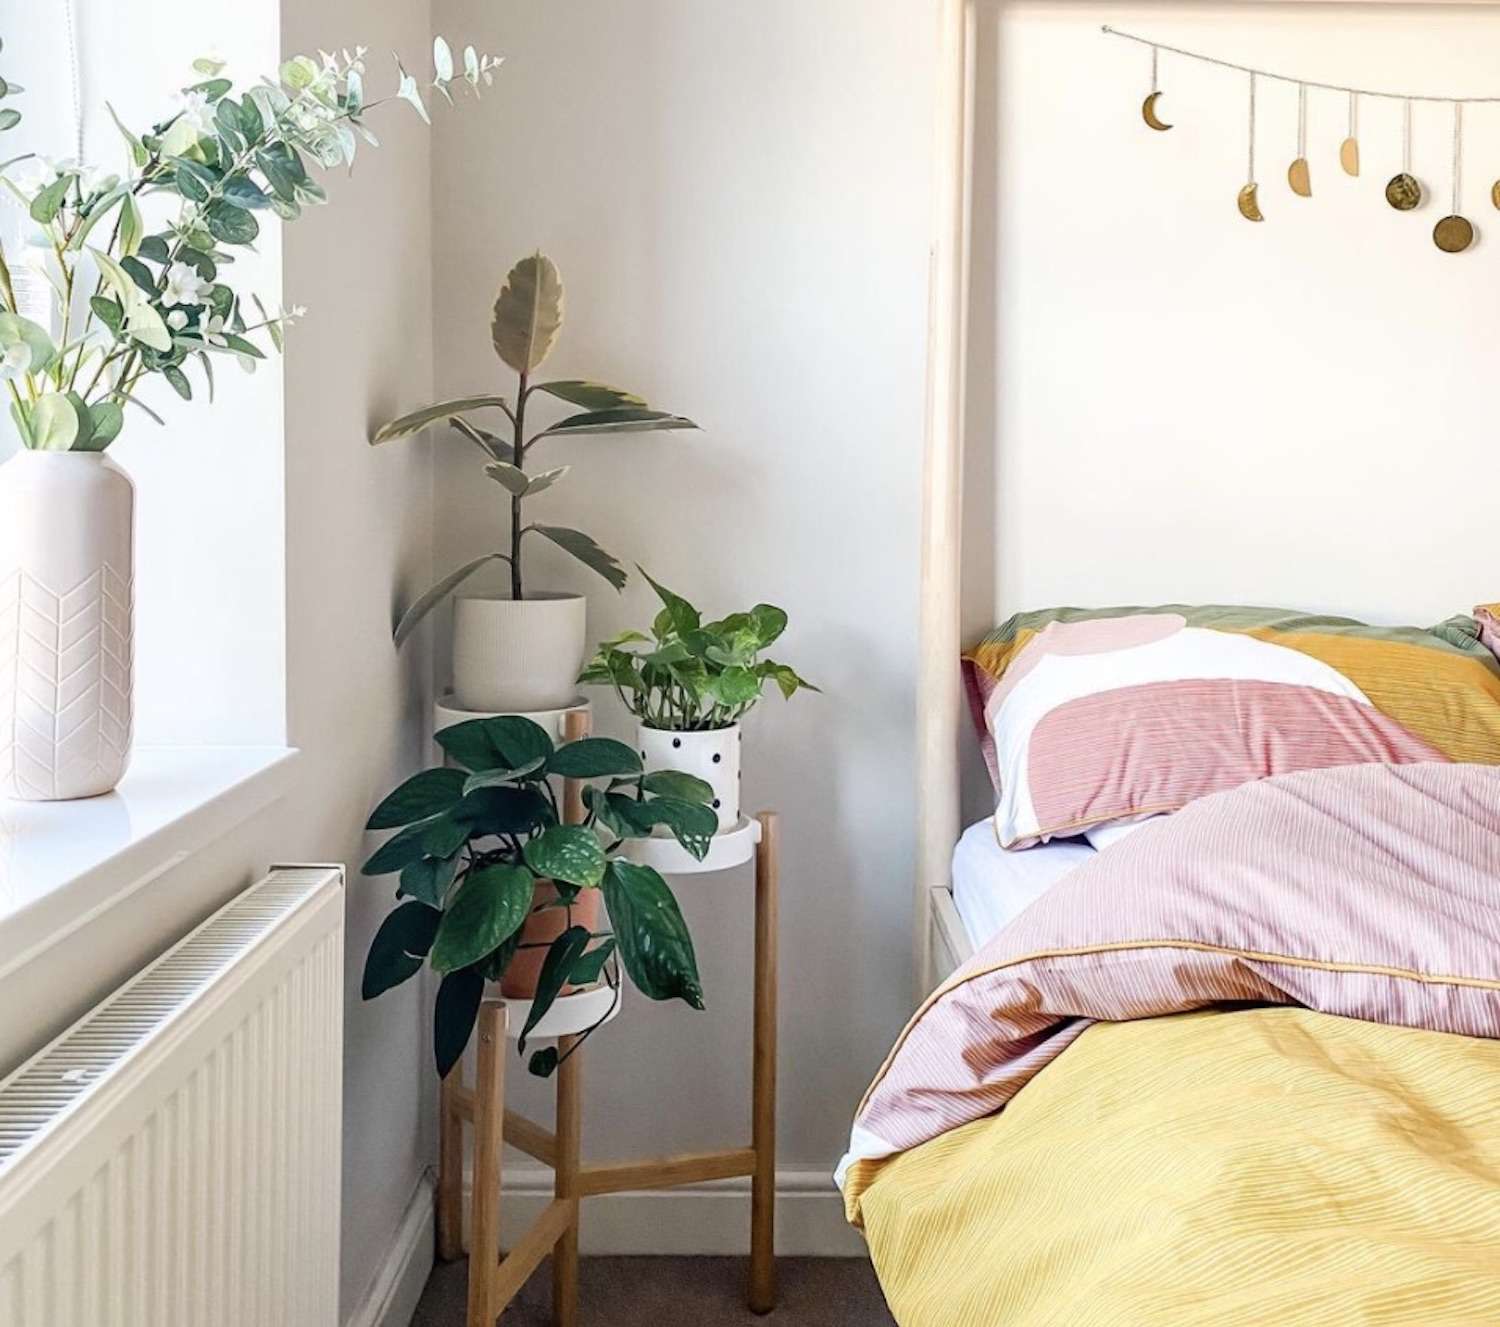 quarto moderno com plantas no criado-mudo, edredom amarelo e rosa